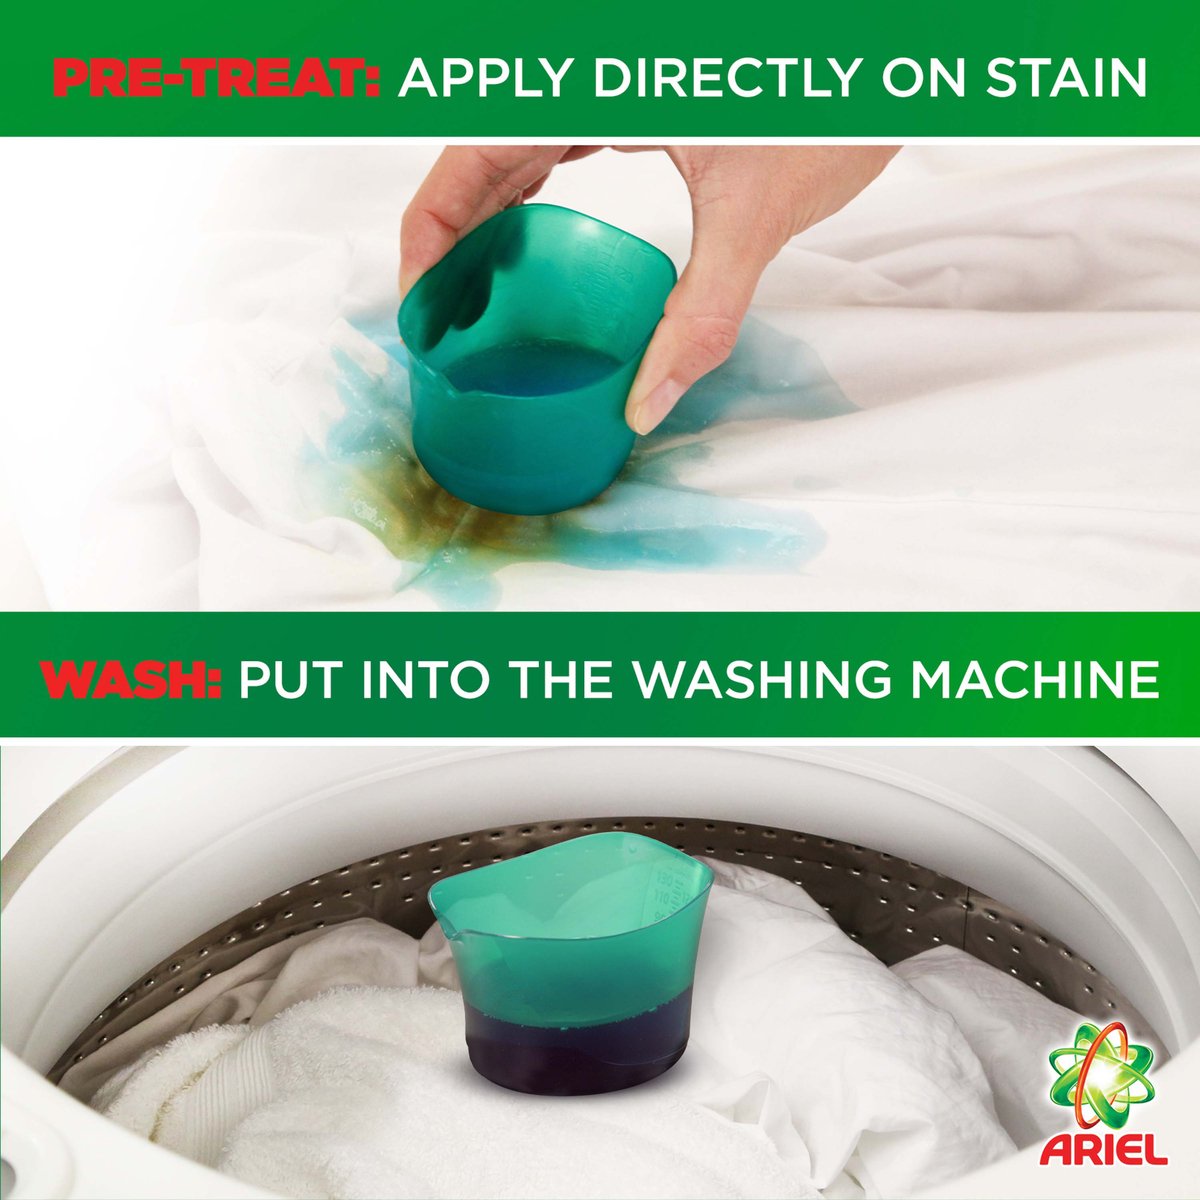 Ariel Automatic Power Gel Laundry Detergent Clean & Fresh Scent 2.8 Litres